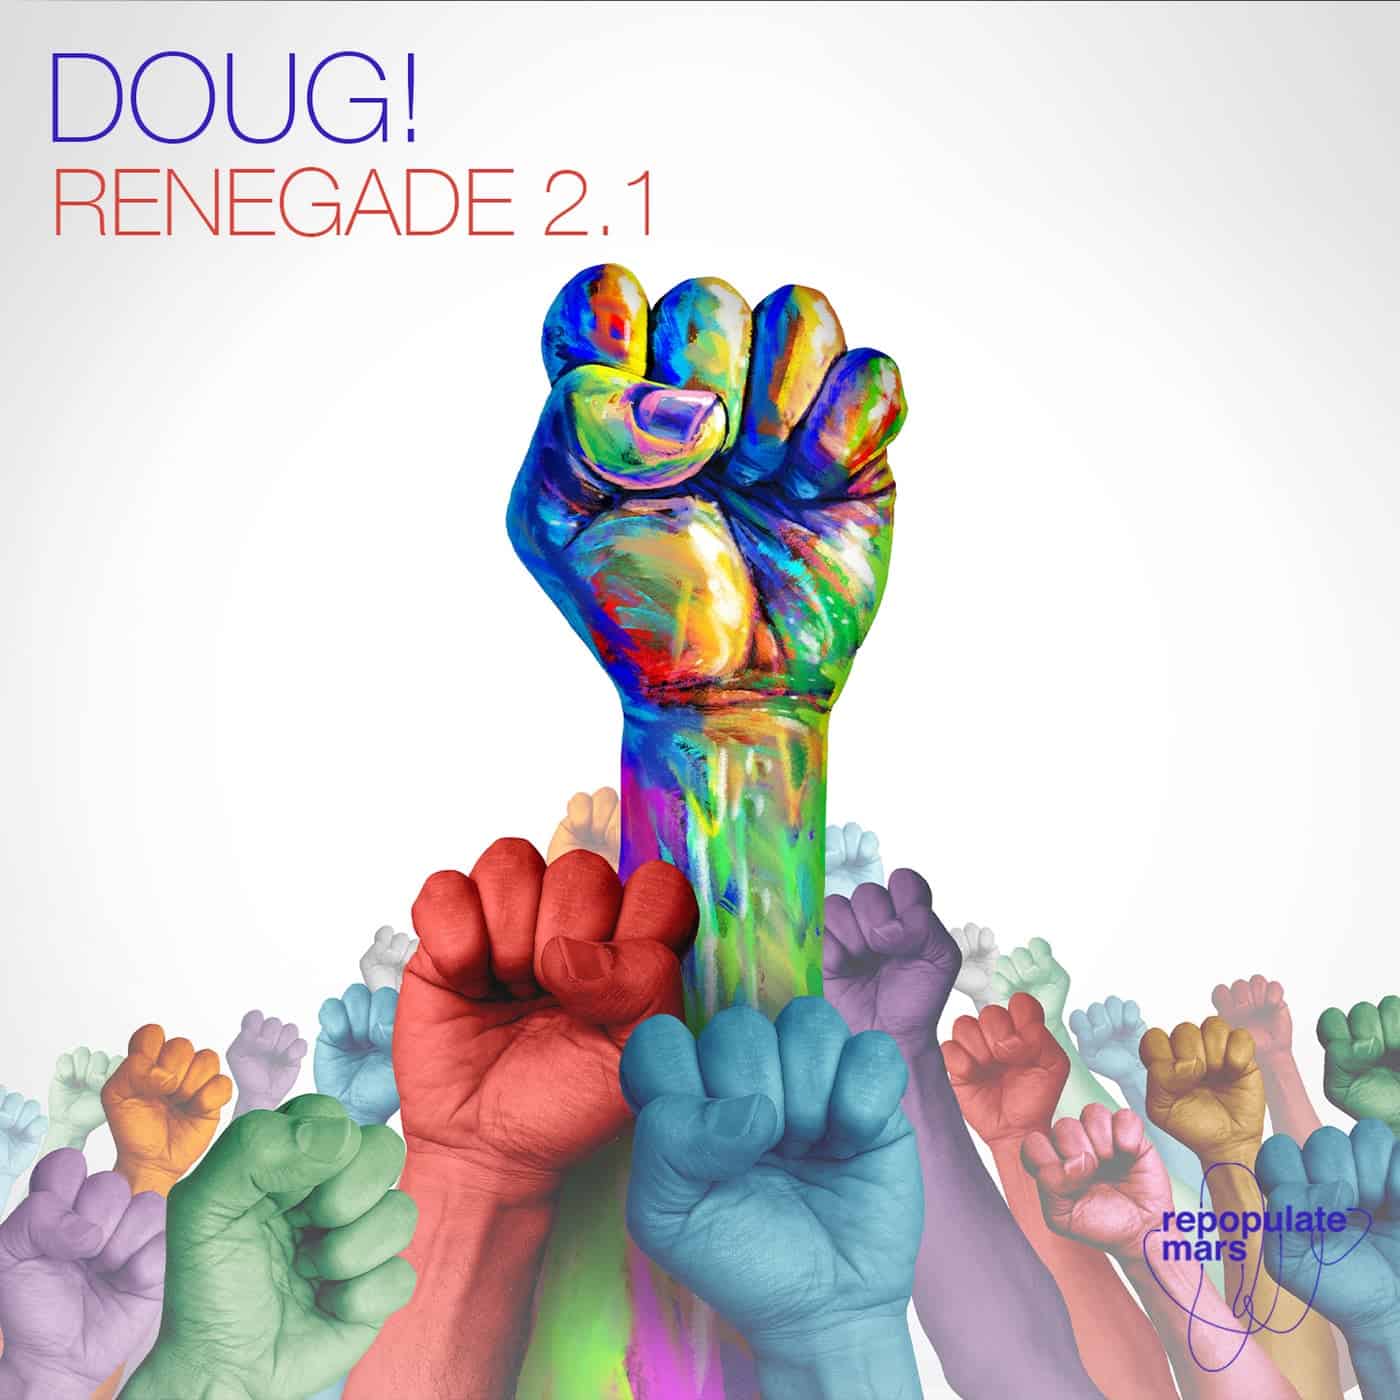 Download DOUG! - Renegade 2.1 on Electrobuzz